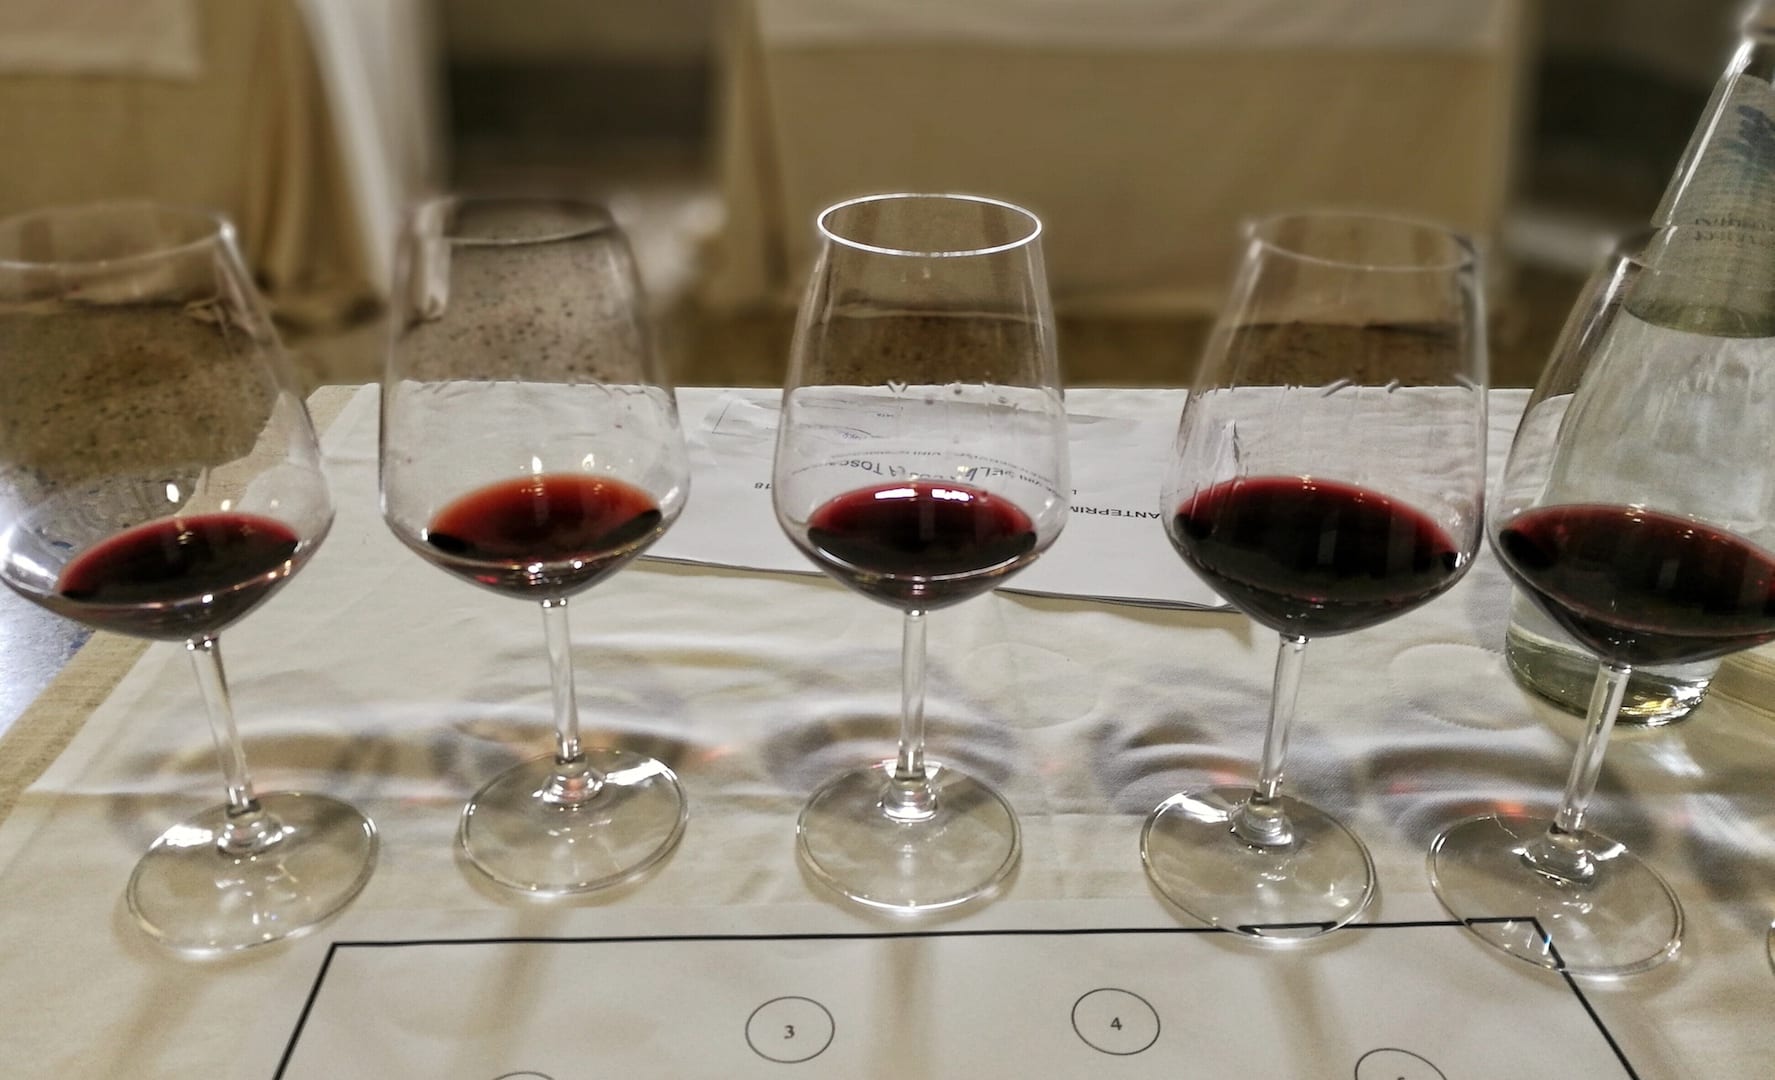 Anteprima Vini della Costa Toscana 2018, il vino va in scena a Lucca